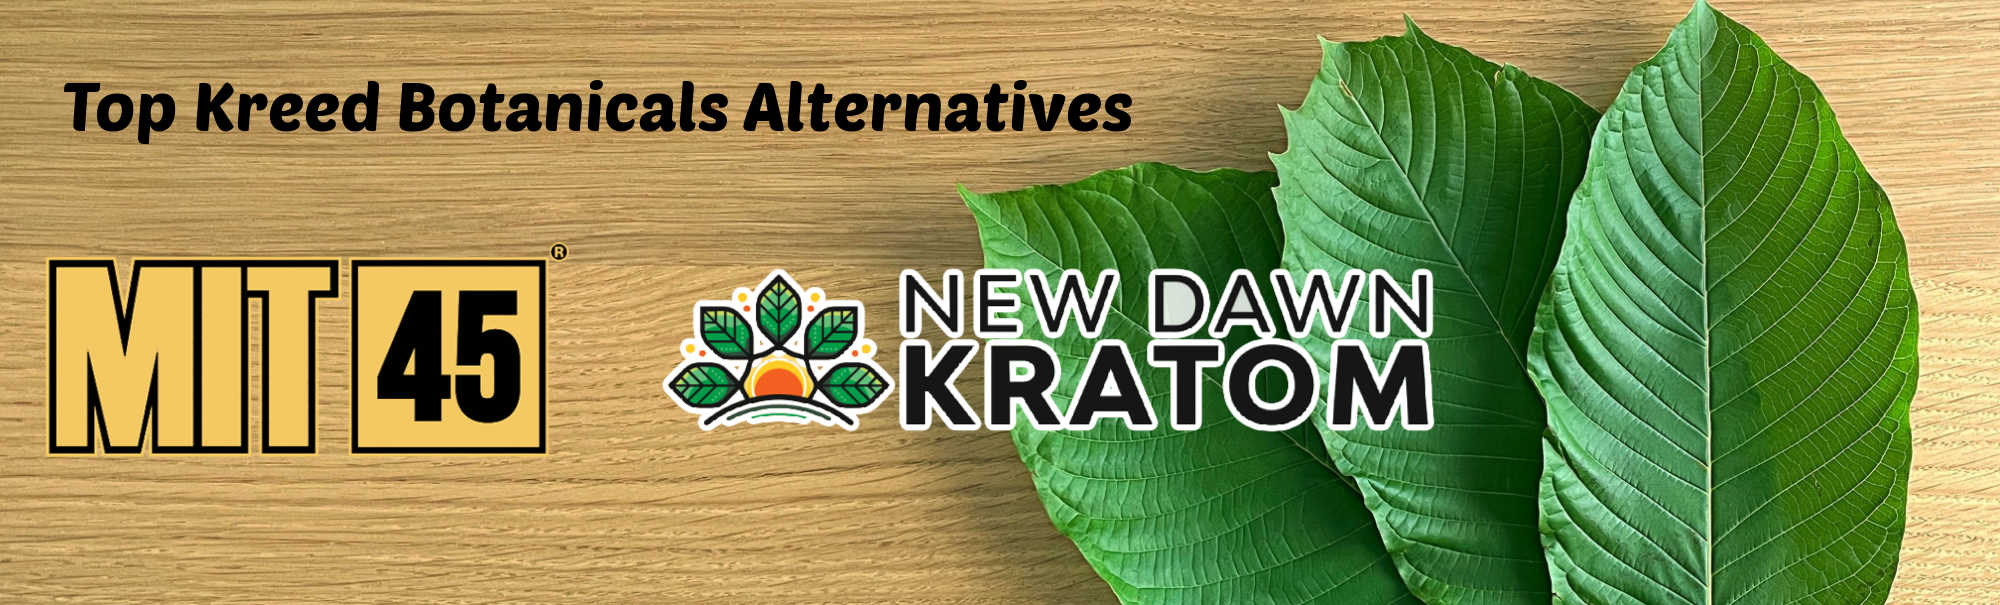 image of kreed botanicals alternatives